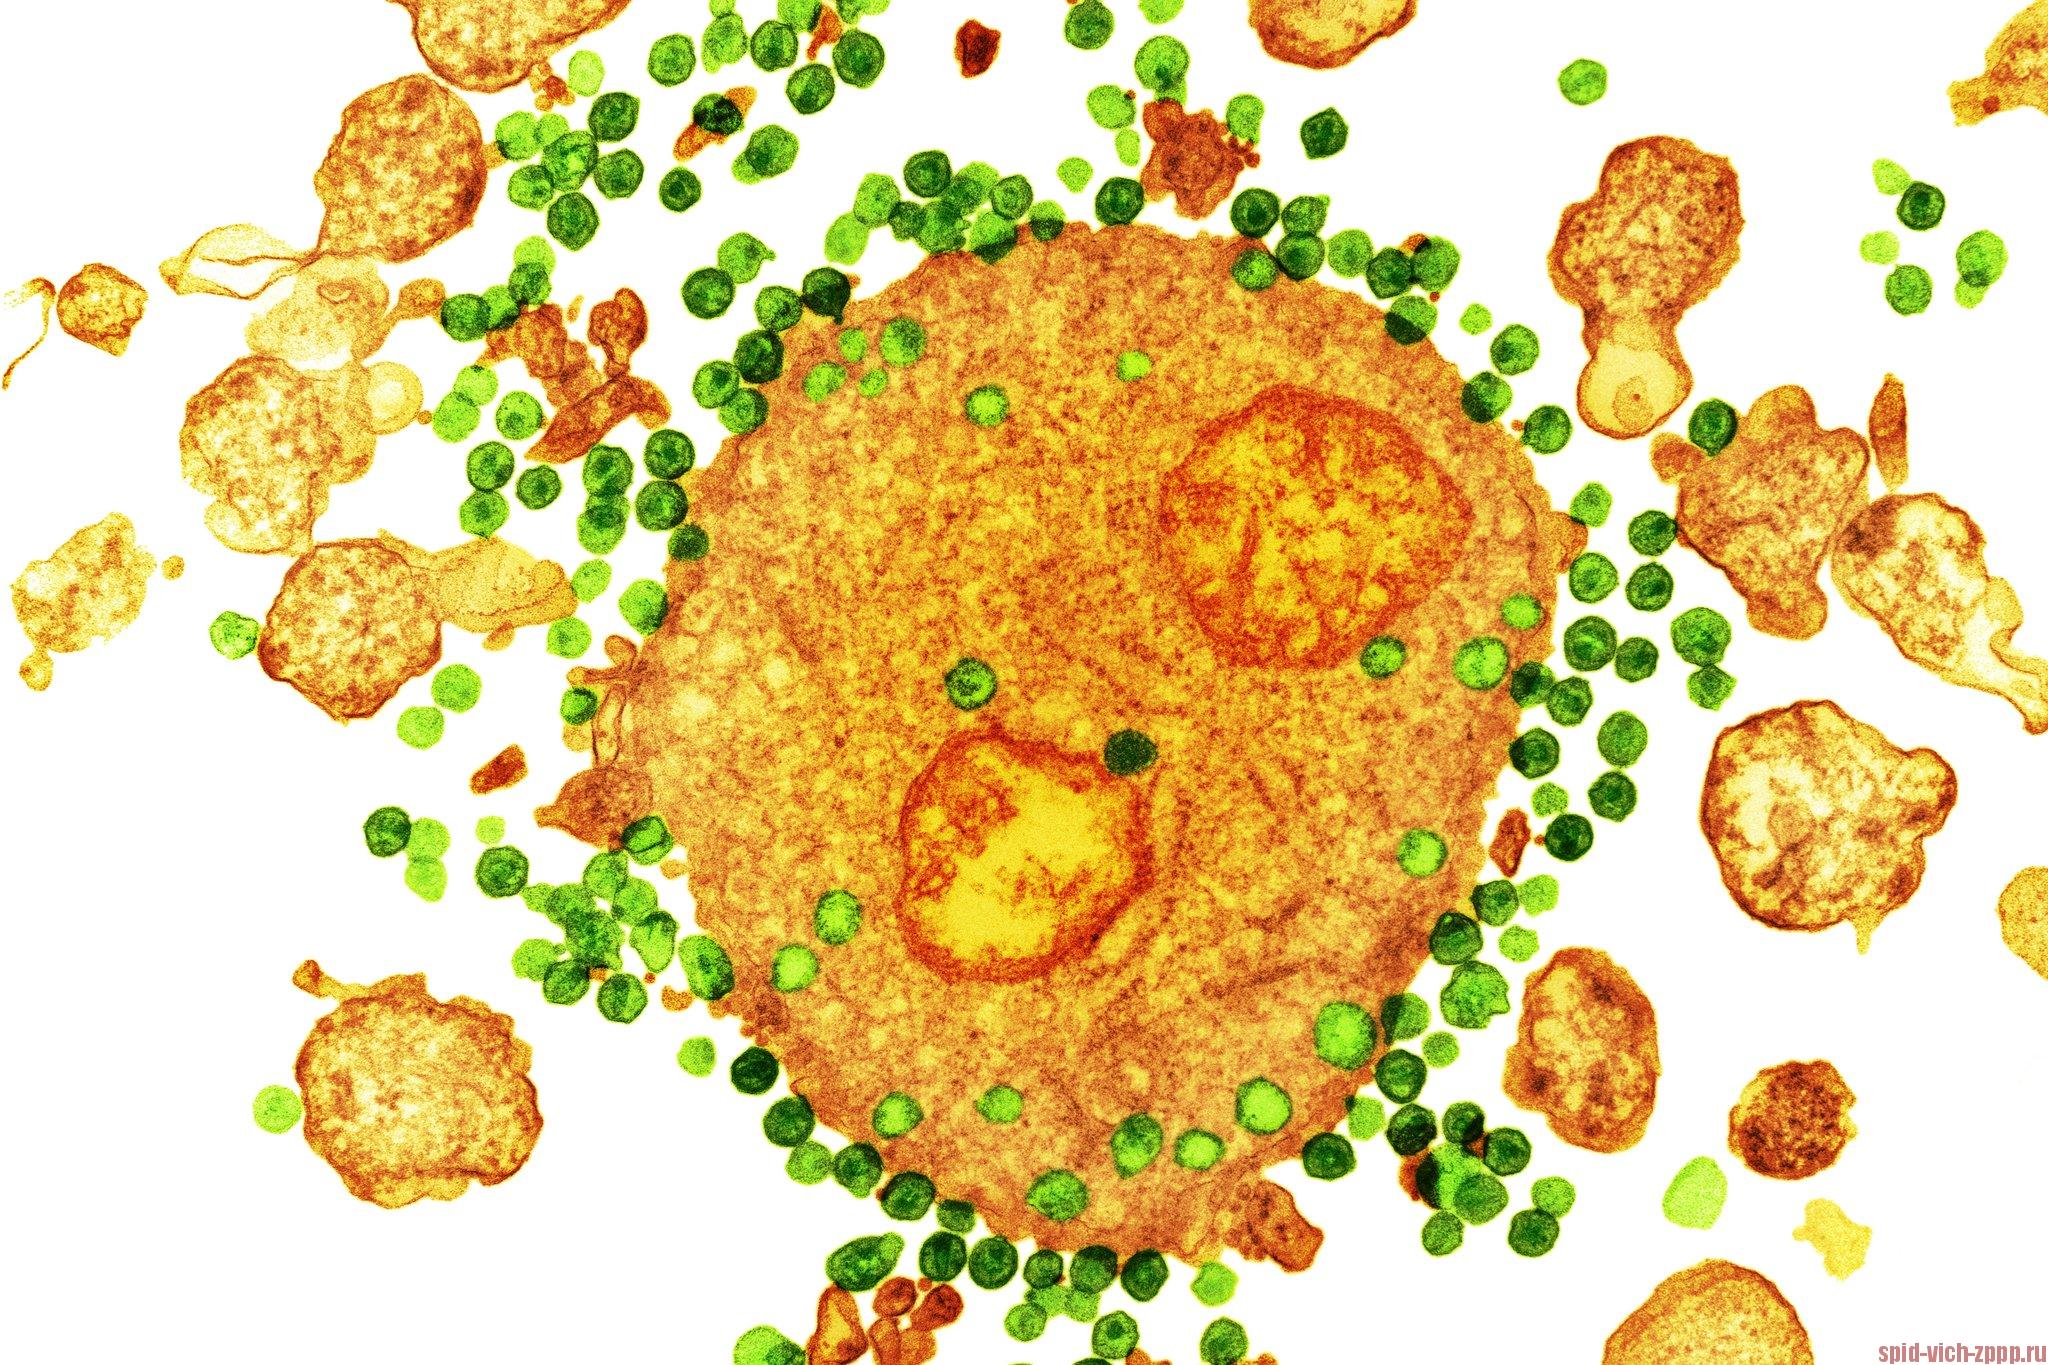 Фото инфицированного ВИЧ лейкоцита с помощью цветной просвечивающей электронной микроскопии.